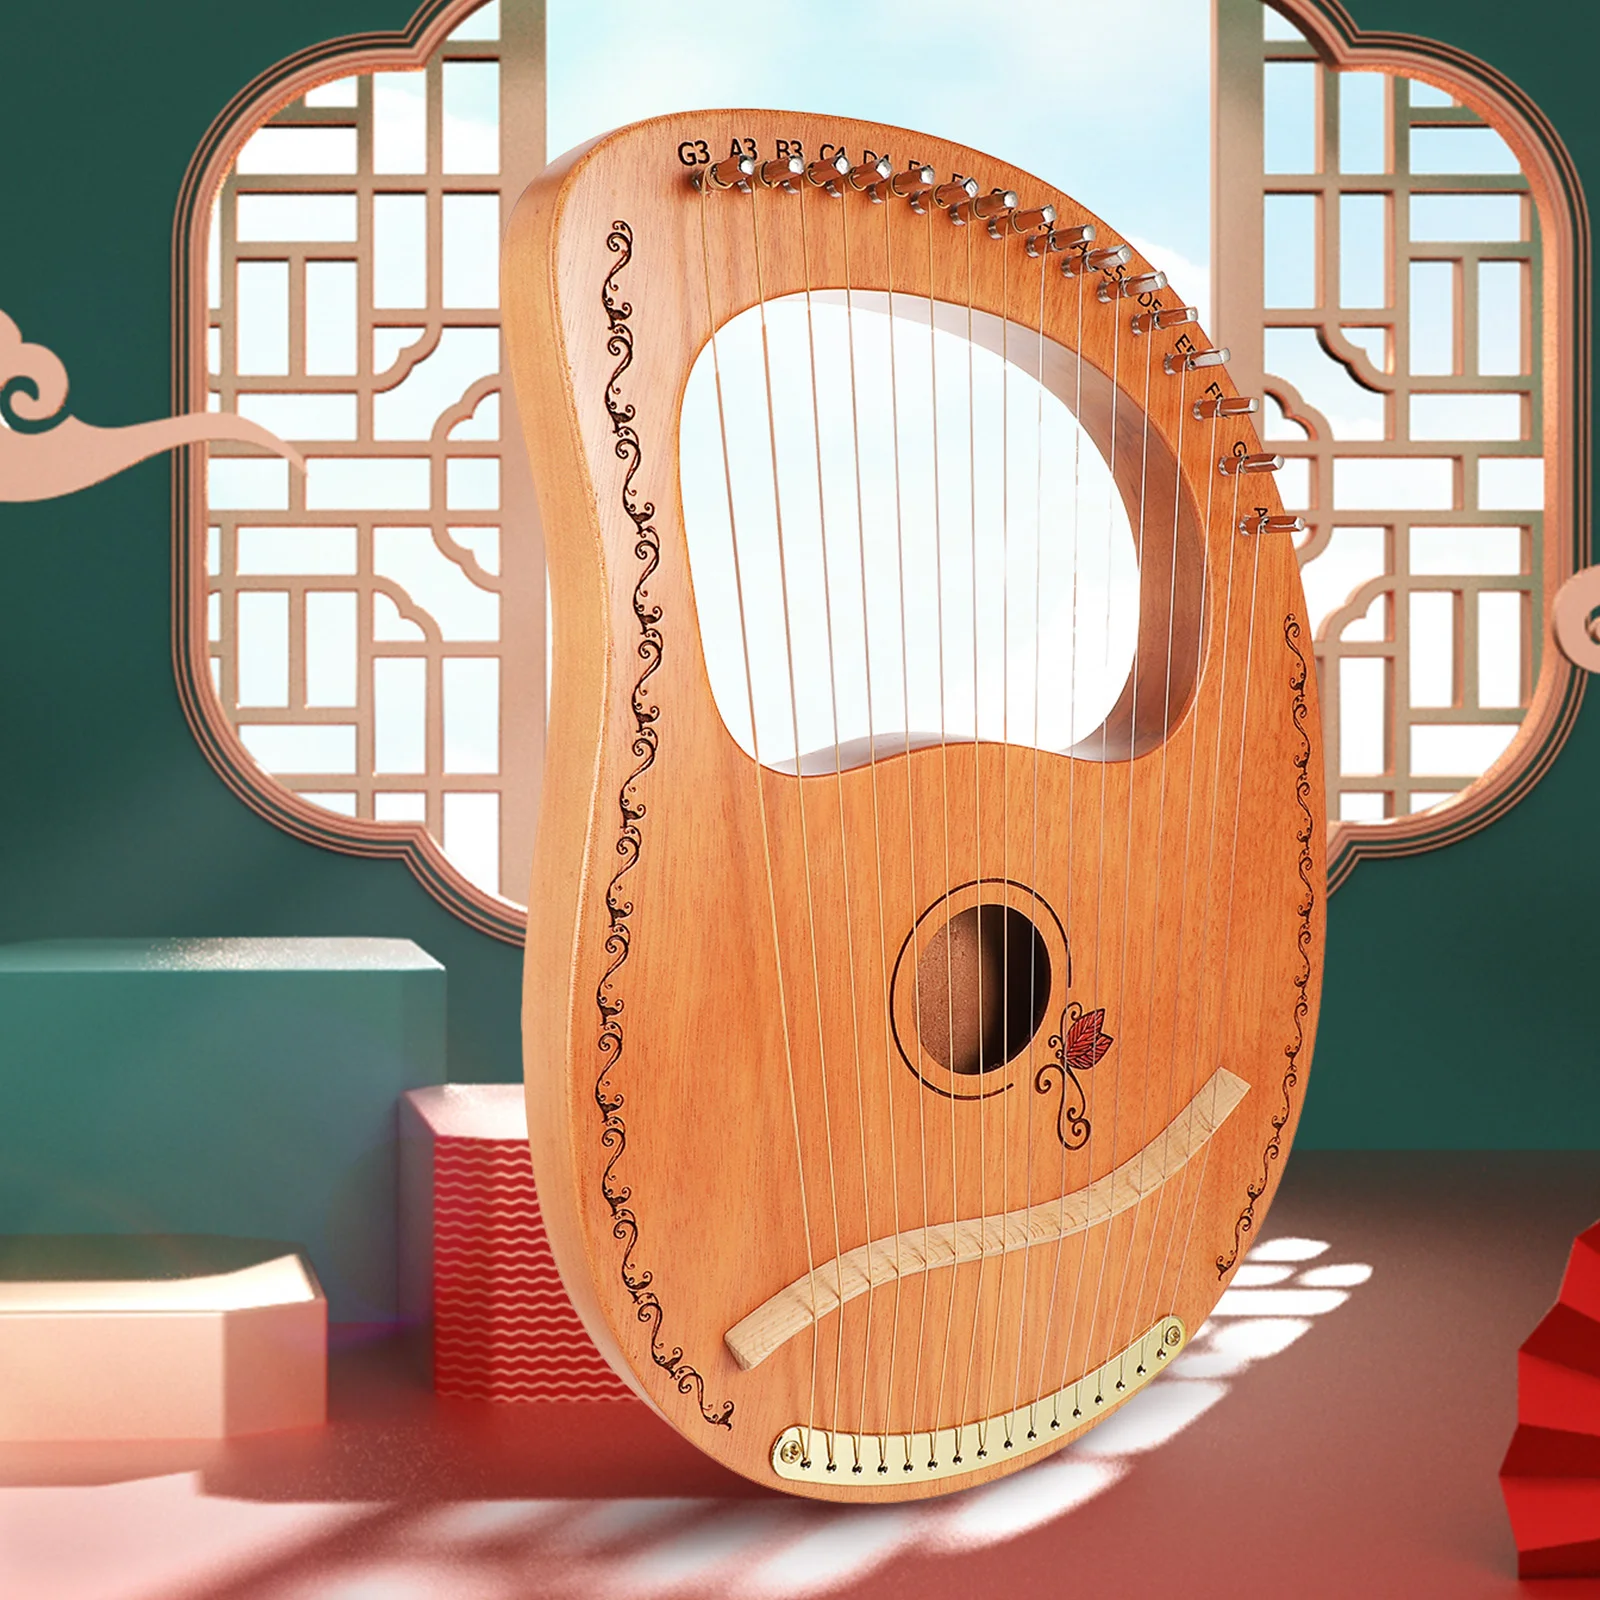 16 lira strunowa prezent praktyczna harfa delikatny Instrument muzyczny z drewna przenośne dziecko drewniane